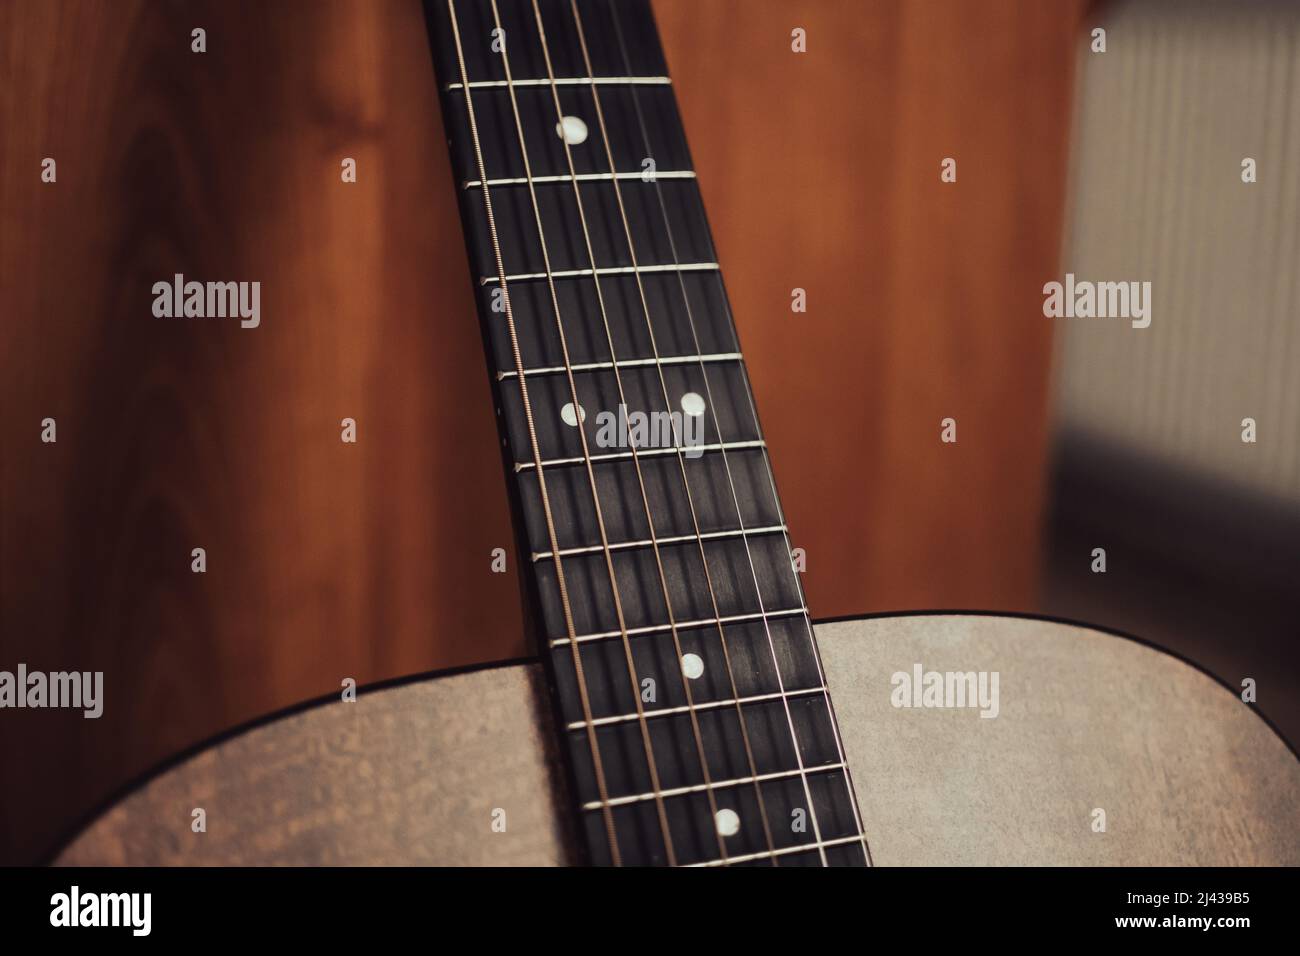 Una vista en ángulo del cuello de una guitarra acústica que muestra el  tablero de fretboard, los trastes, los marcadores de posición y las cuerdas  Fotografía de stock - Alamy